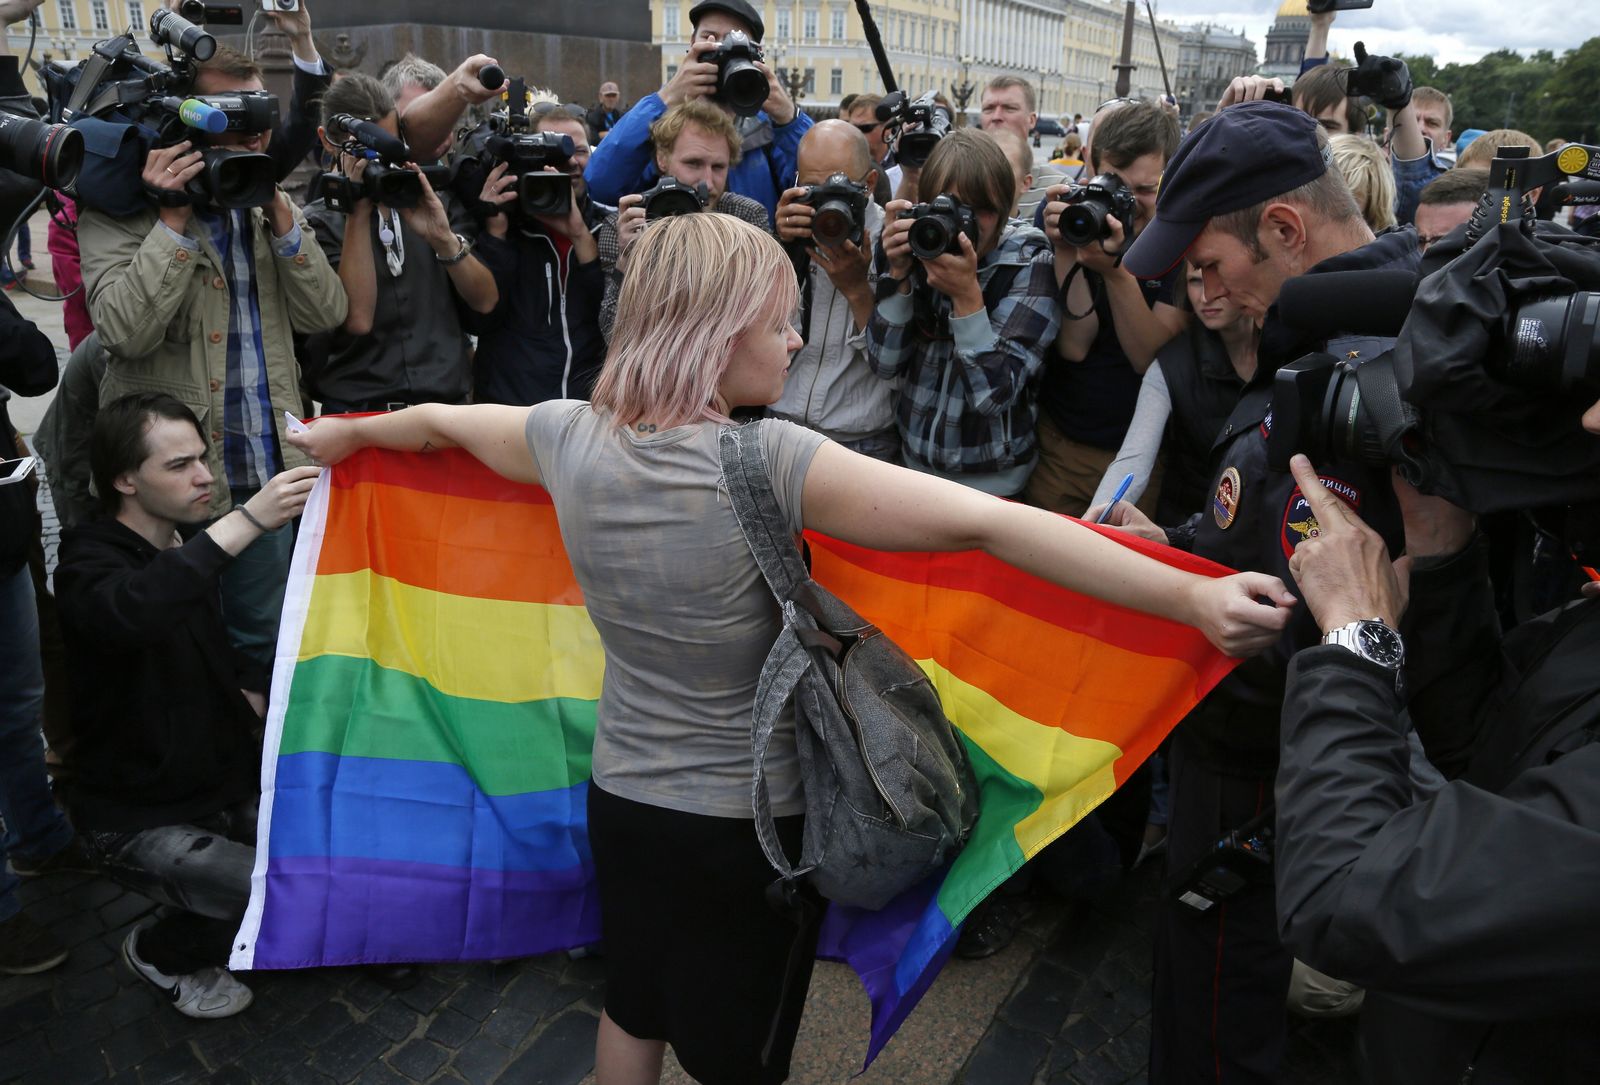 Ρωσία: Αστυνομικοί συνοδευόμενοι από εθνικιστές συνέλαβαν δύο ΛΟΑΤΚΙ άτομα